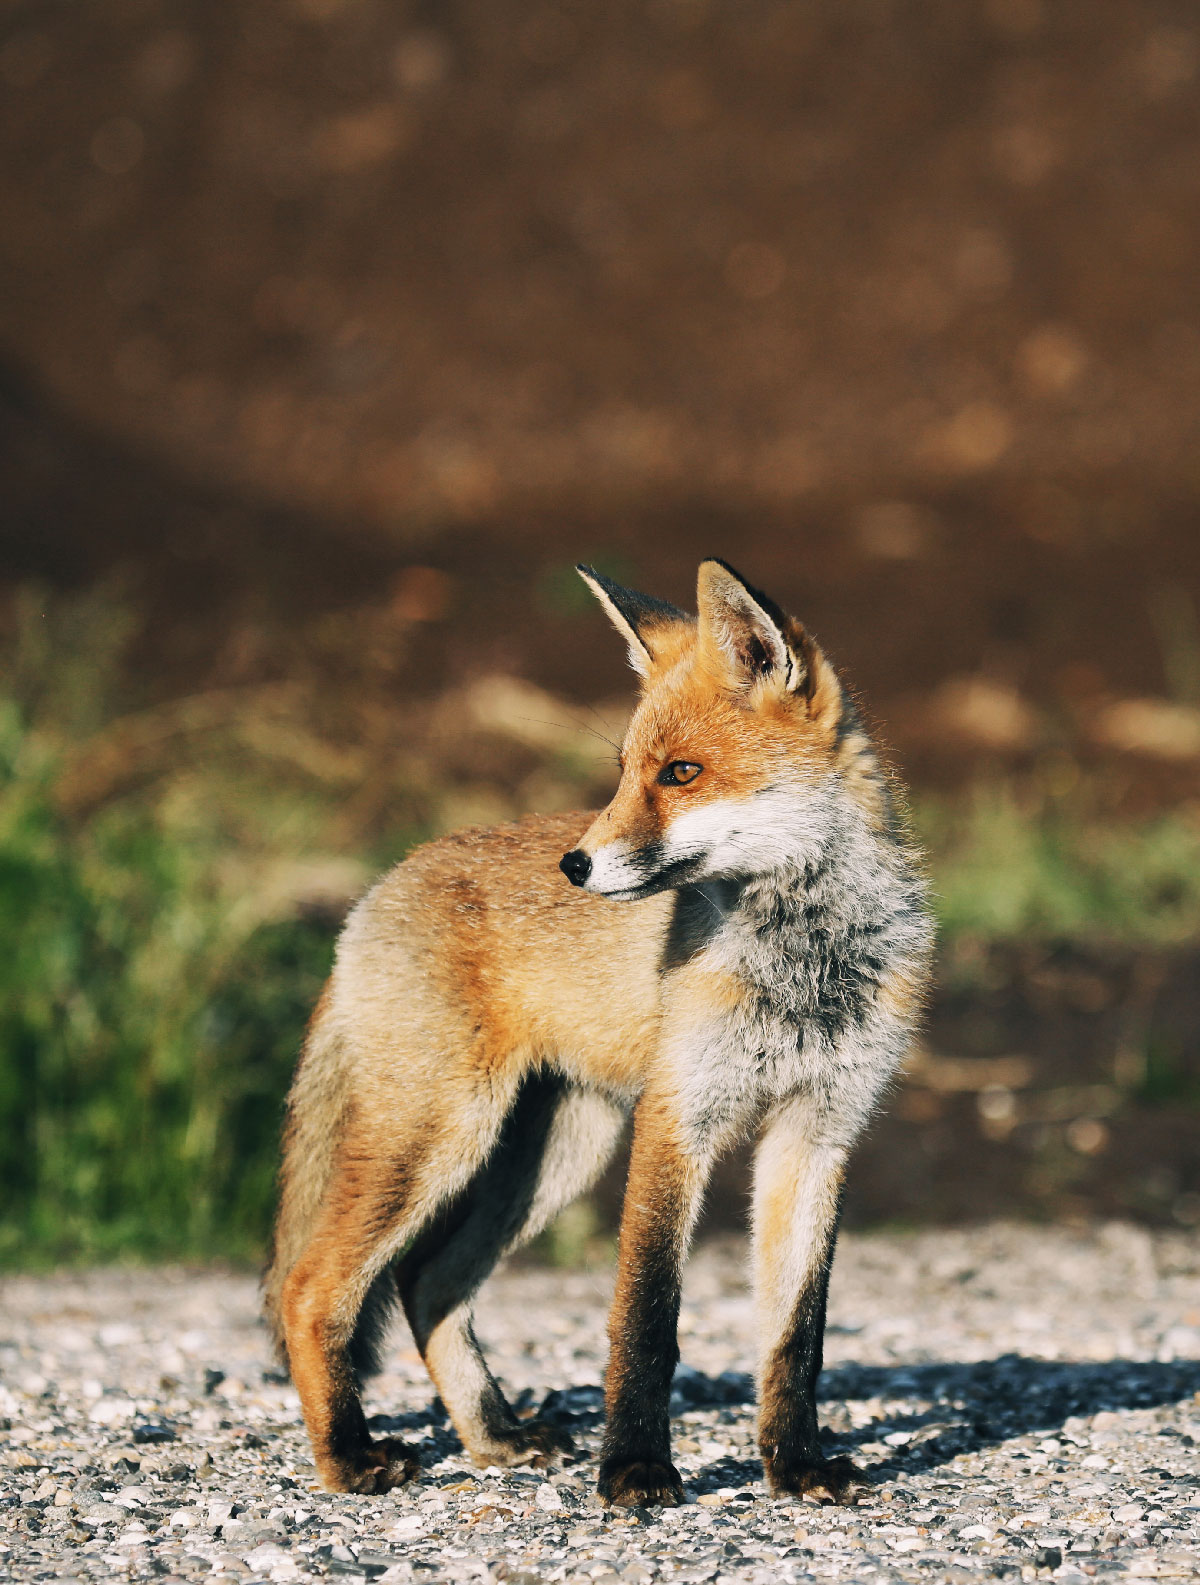 Midt på stien står en røveunge med rødlig pels og spejder i retning af solen.